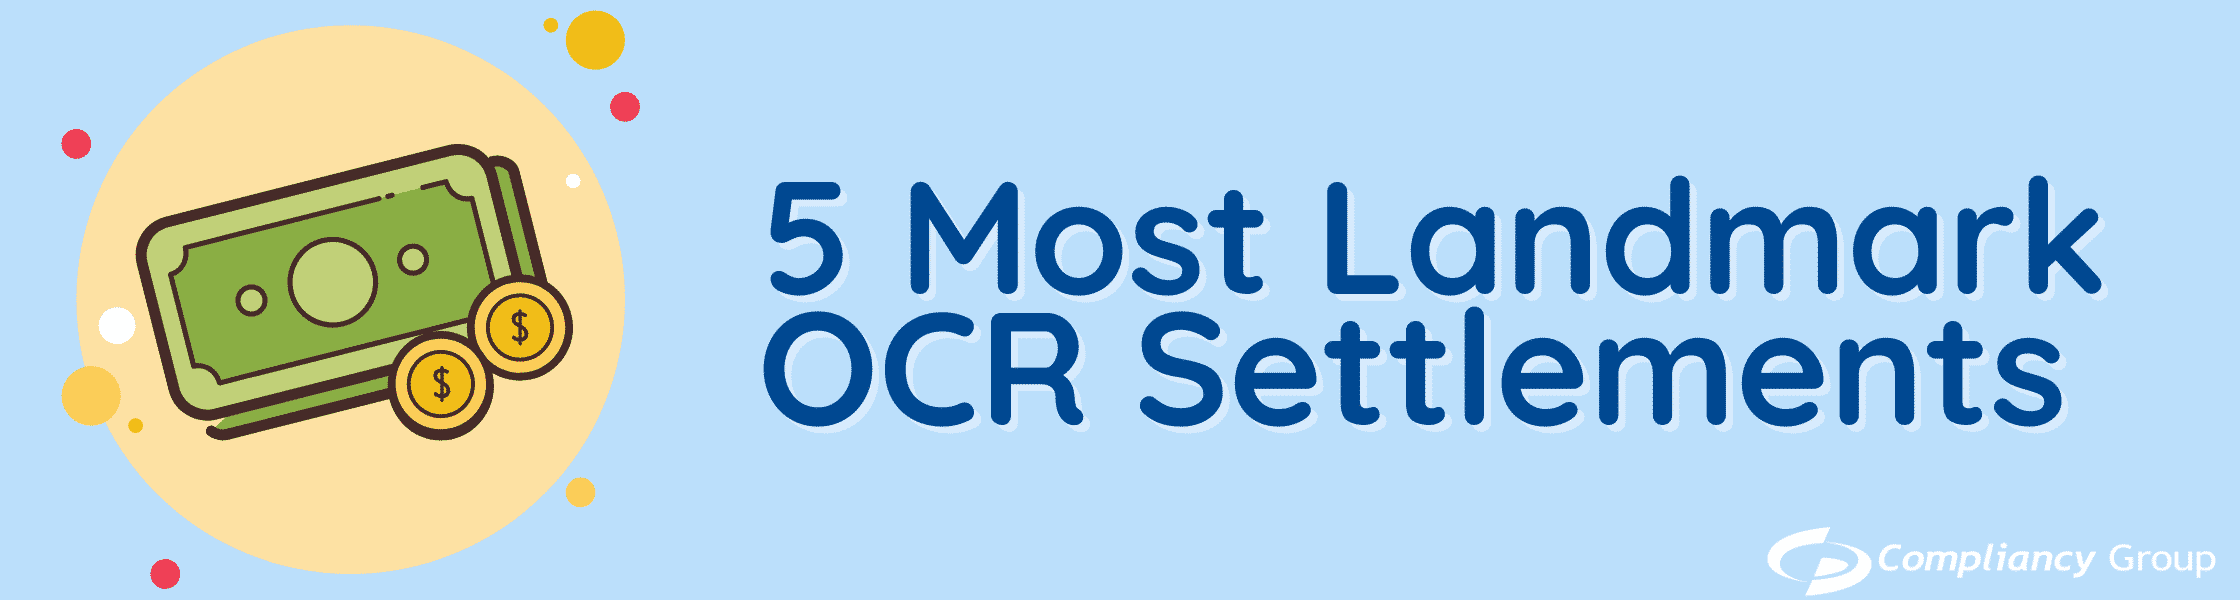 5 Most Landmark OCR Settlements